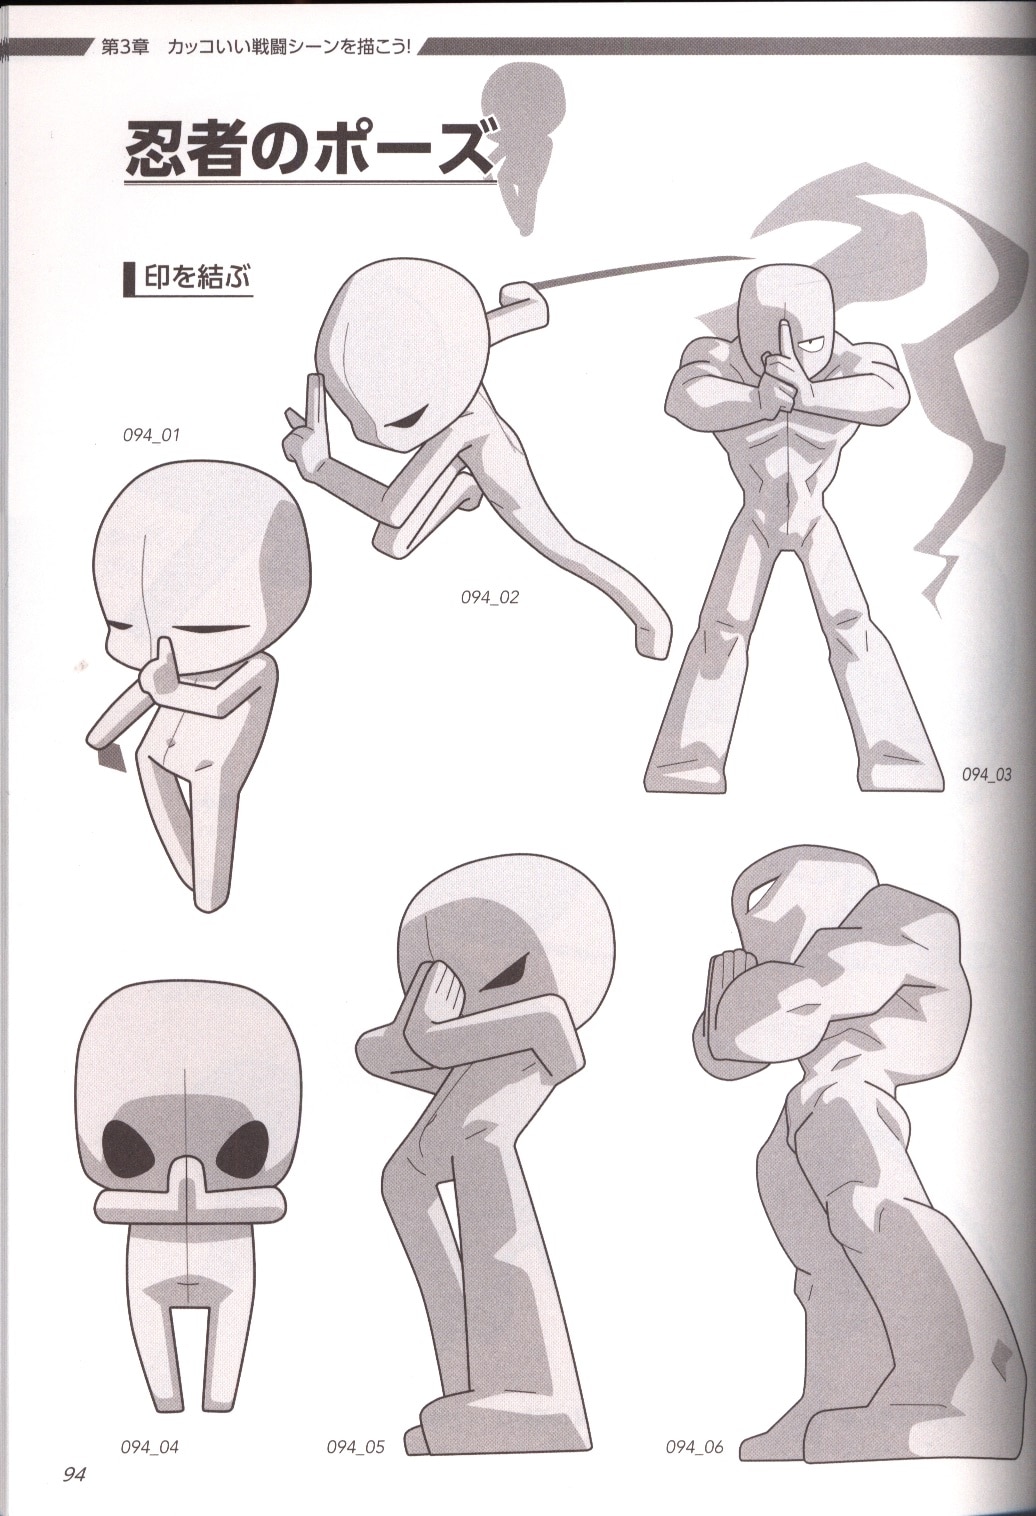 Hobby Japan Super Deformed Pose Collection Boy Character Ed Mandarake Online Shop